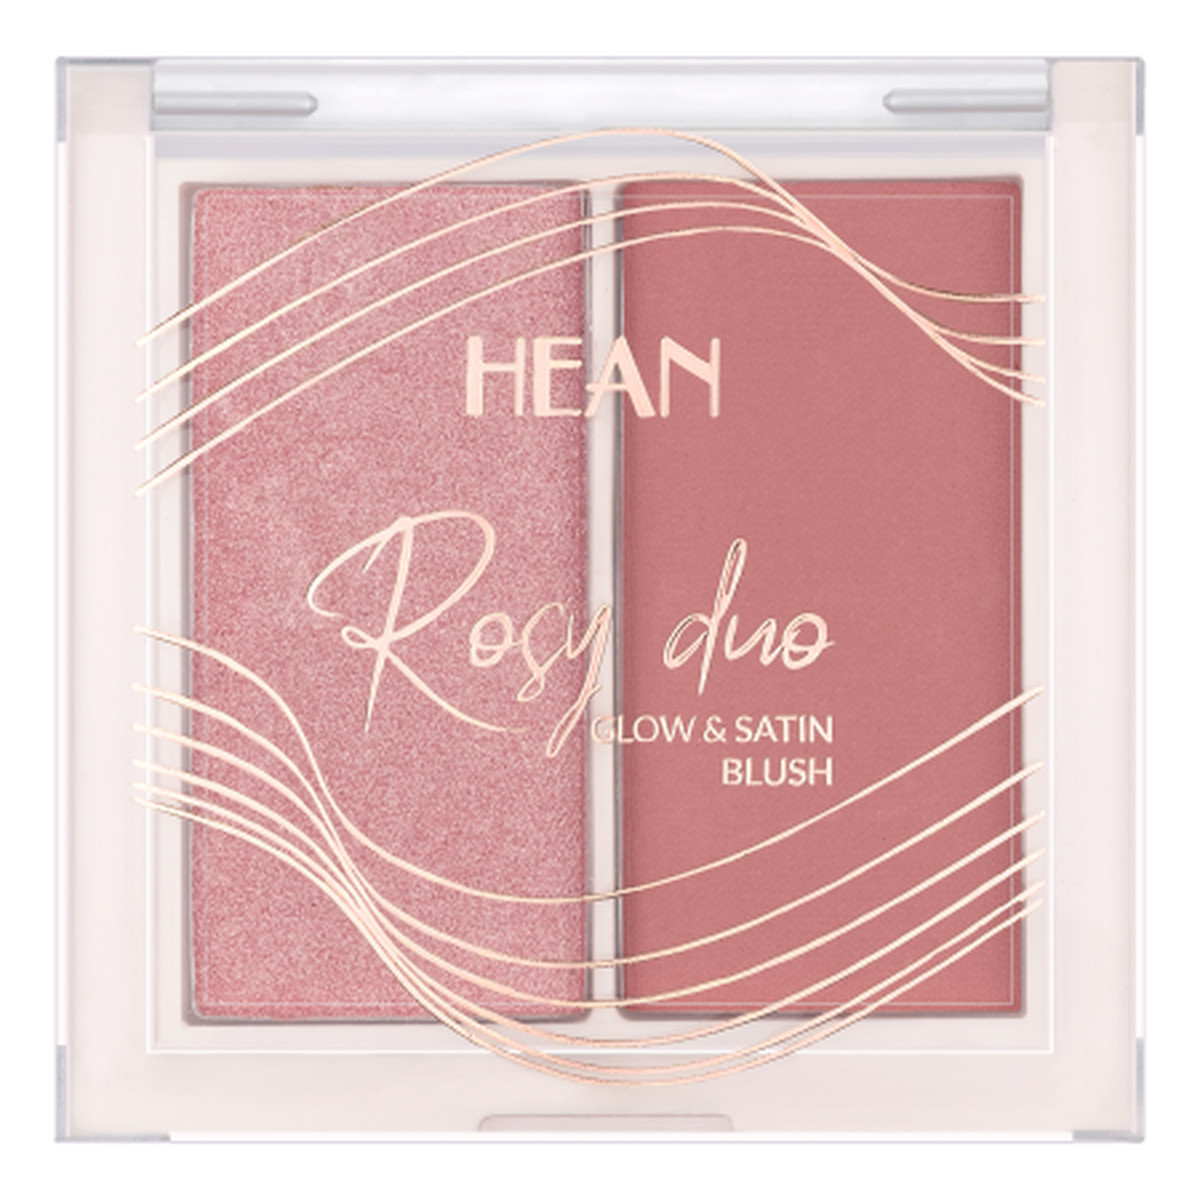 Hean Rosy Duo Paletka Róży Glow & Satin Blush 6g